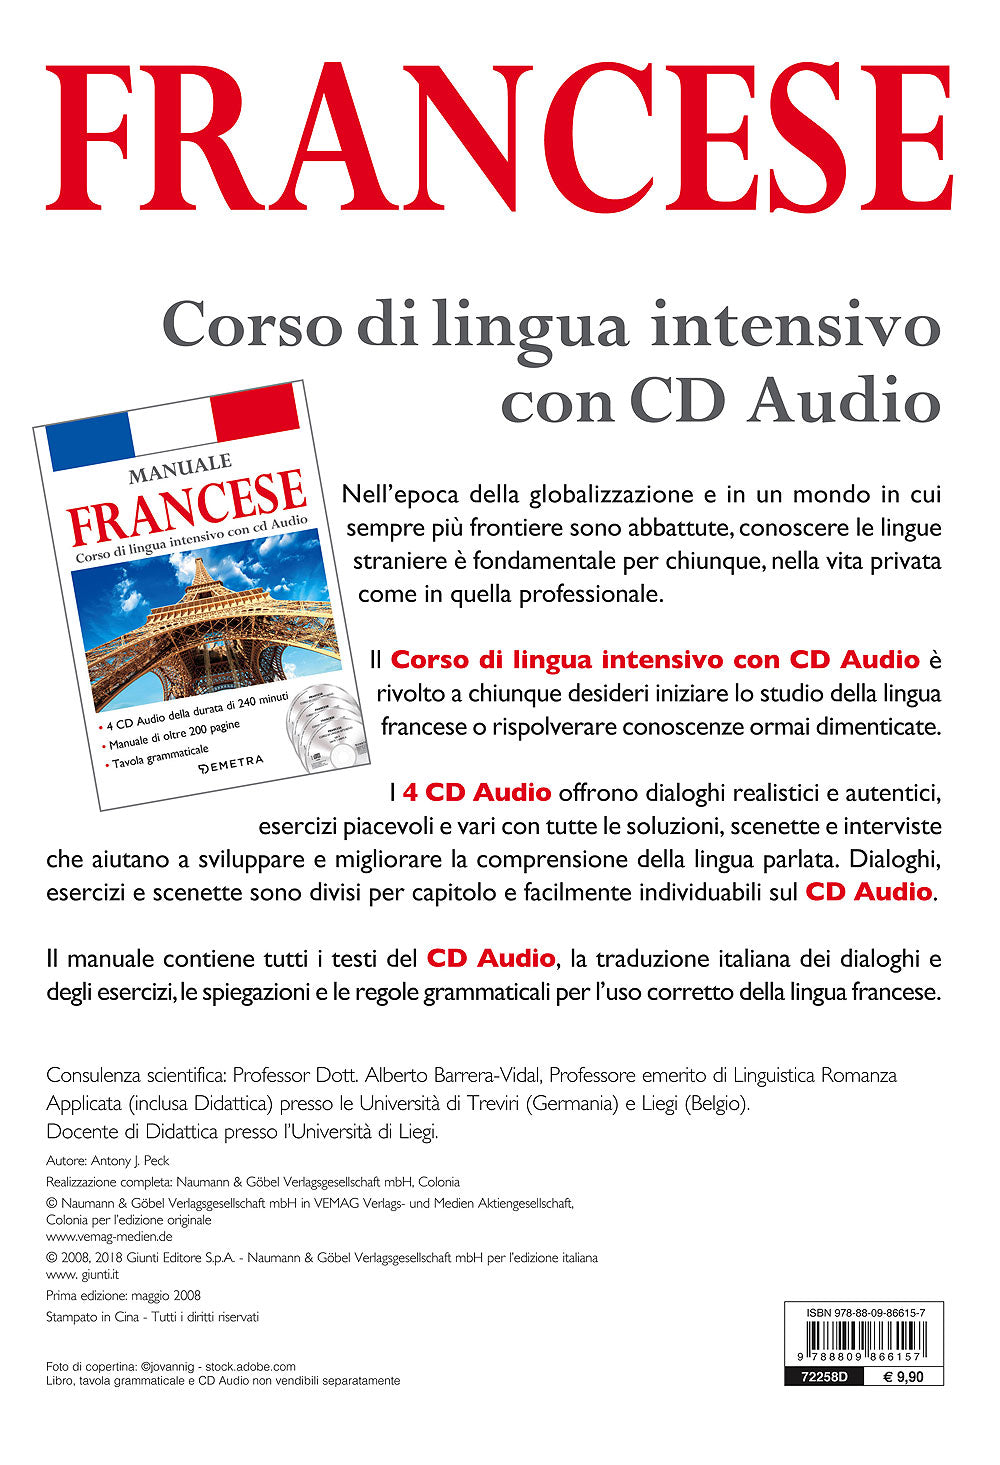 Corso di lingua Francese intensivo con CD Audio. 4 CD della durata di 240 minuti - Manuale di oltre 200 pagine - Tavola grammaticale